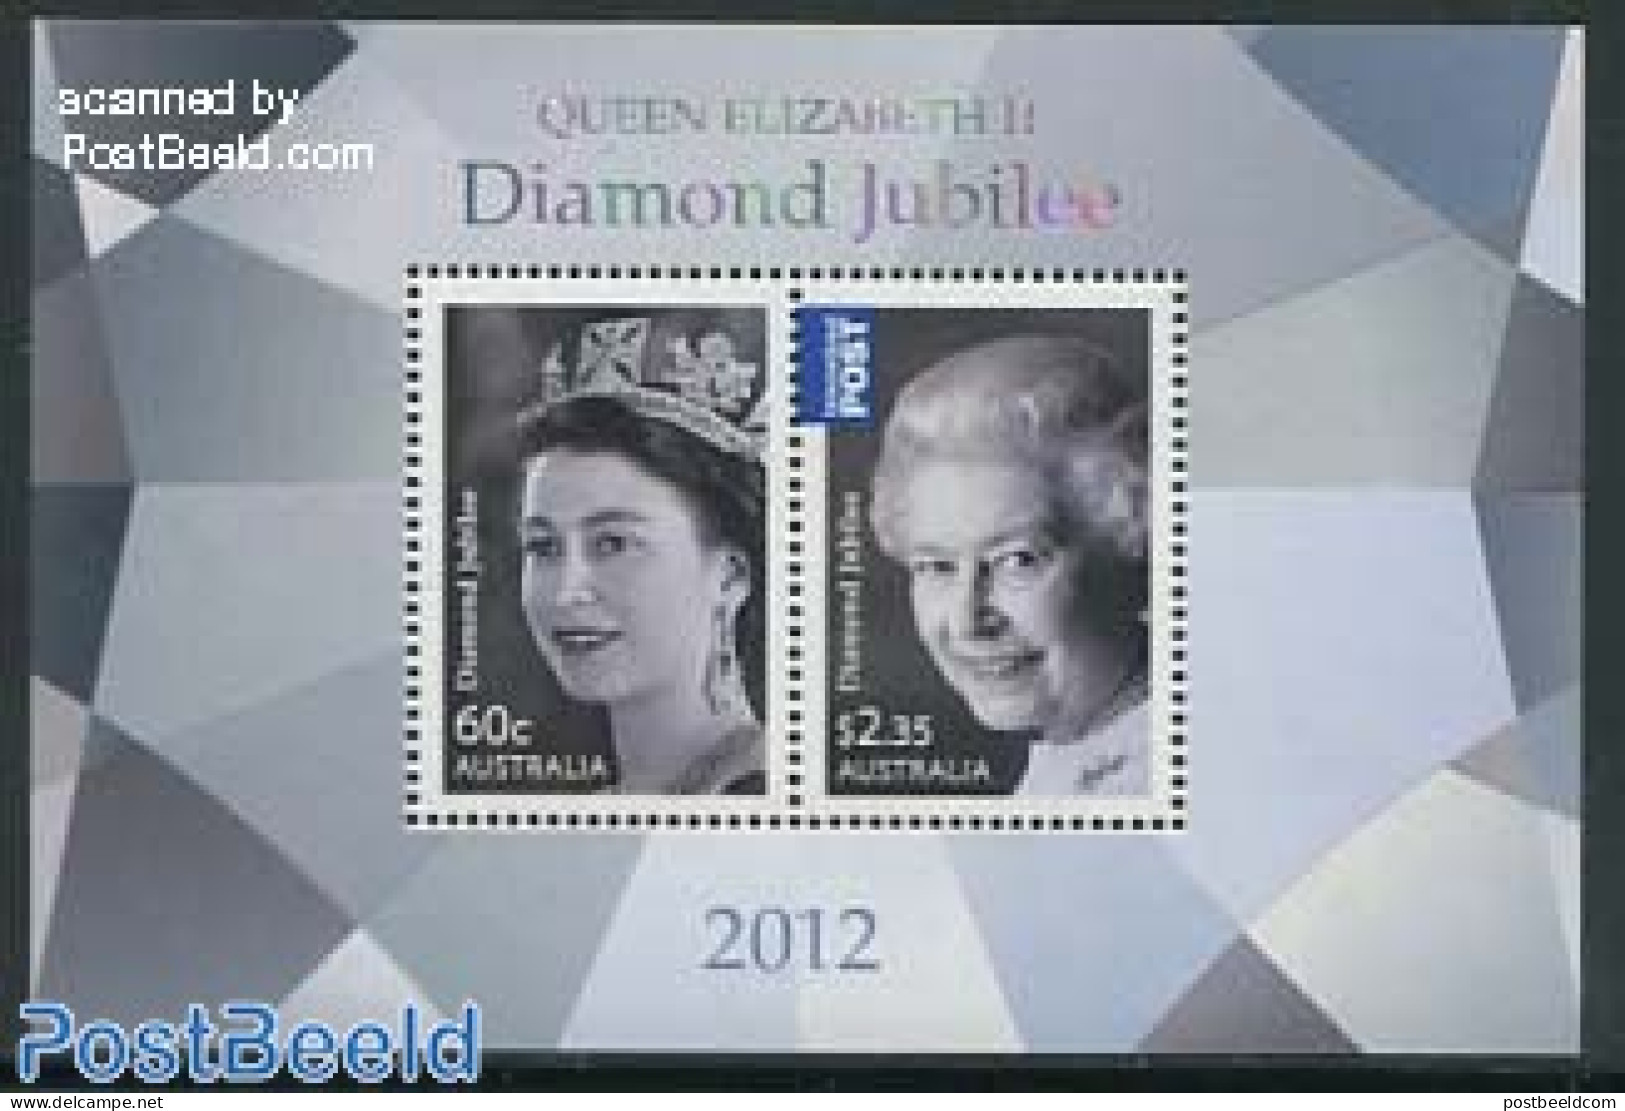 Australia 2012 Diamond Jubilee Elizabeth S/s, Mint NH, History - Various - Kings & Queens (Royalty) - Holograms - Unused Stamps